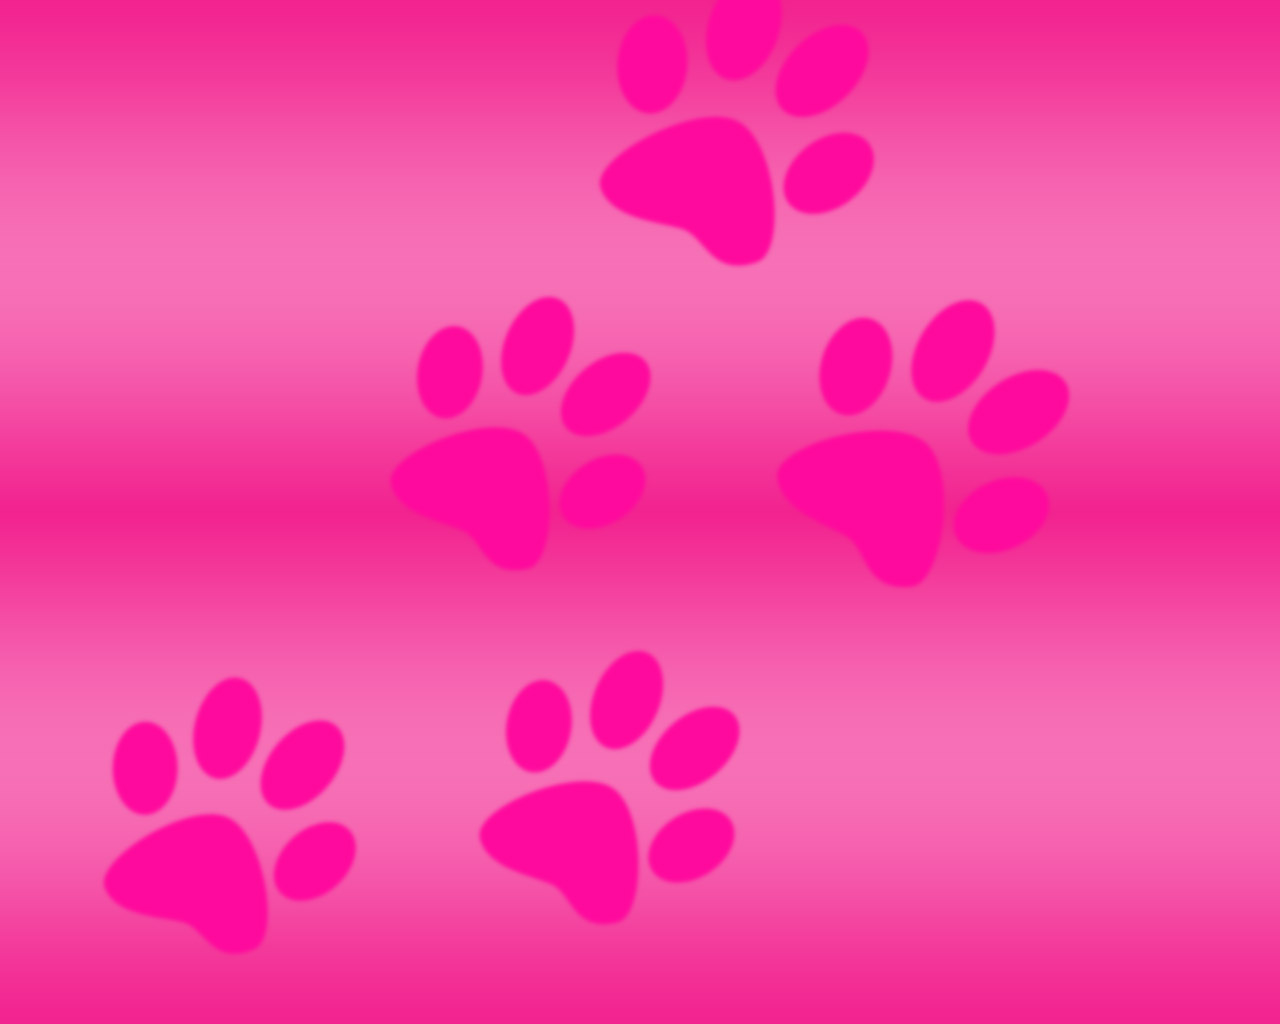 Pink Wallpaper For Desktop The Image